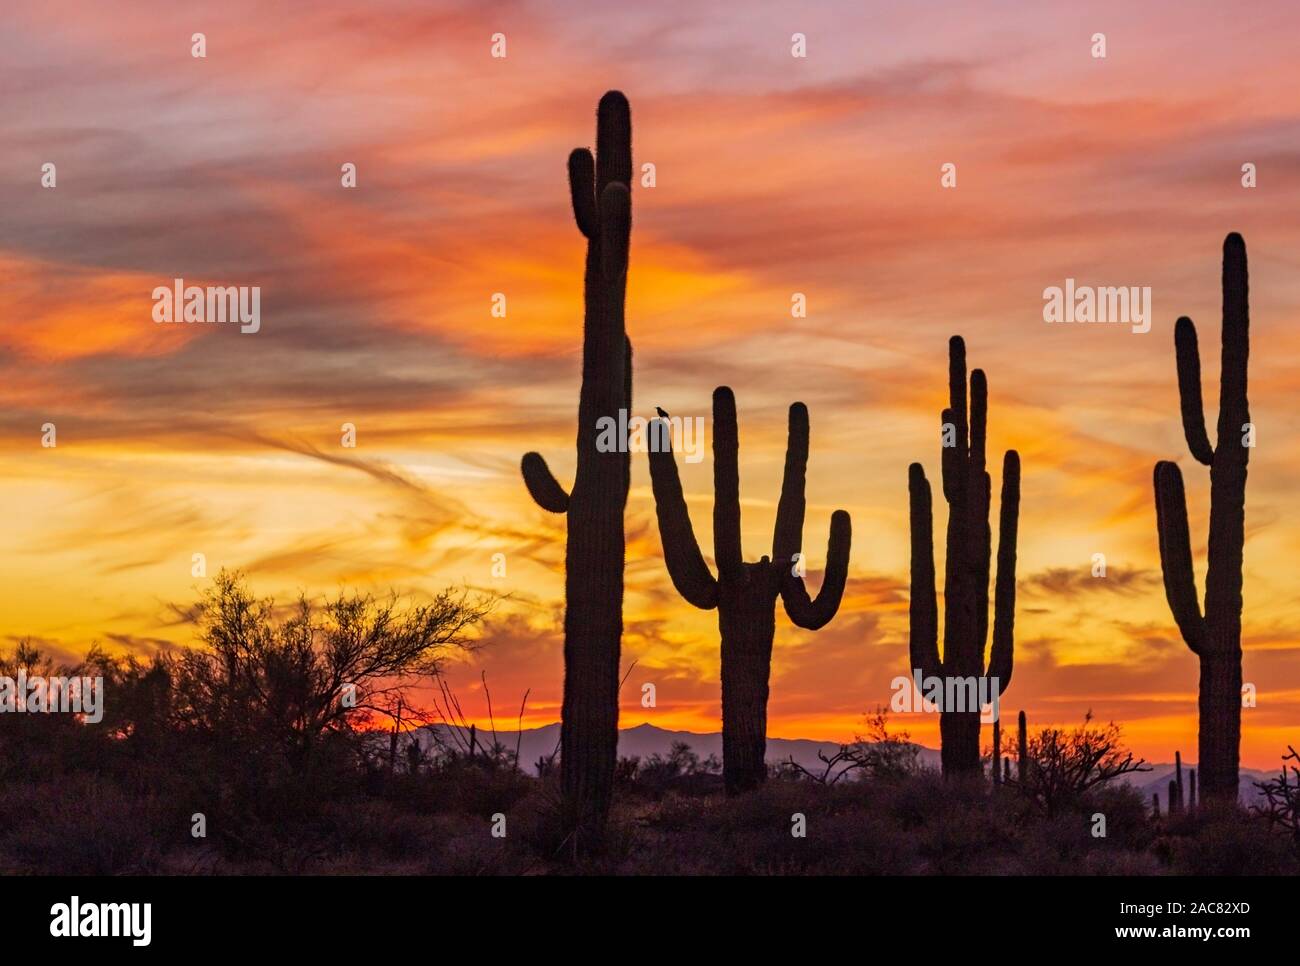 Ein Stand von Saguaro Kaktus mit bunten Sonnenuntergang Himmel in North Scottsdale, AZ Wüste zu bewahren und den Park. Stockfoto